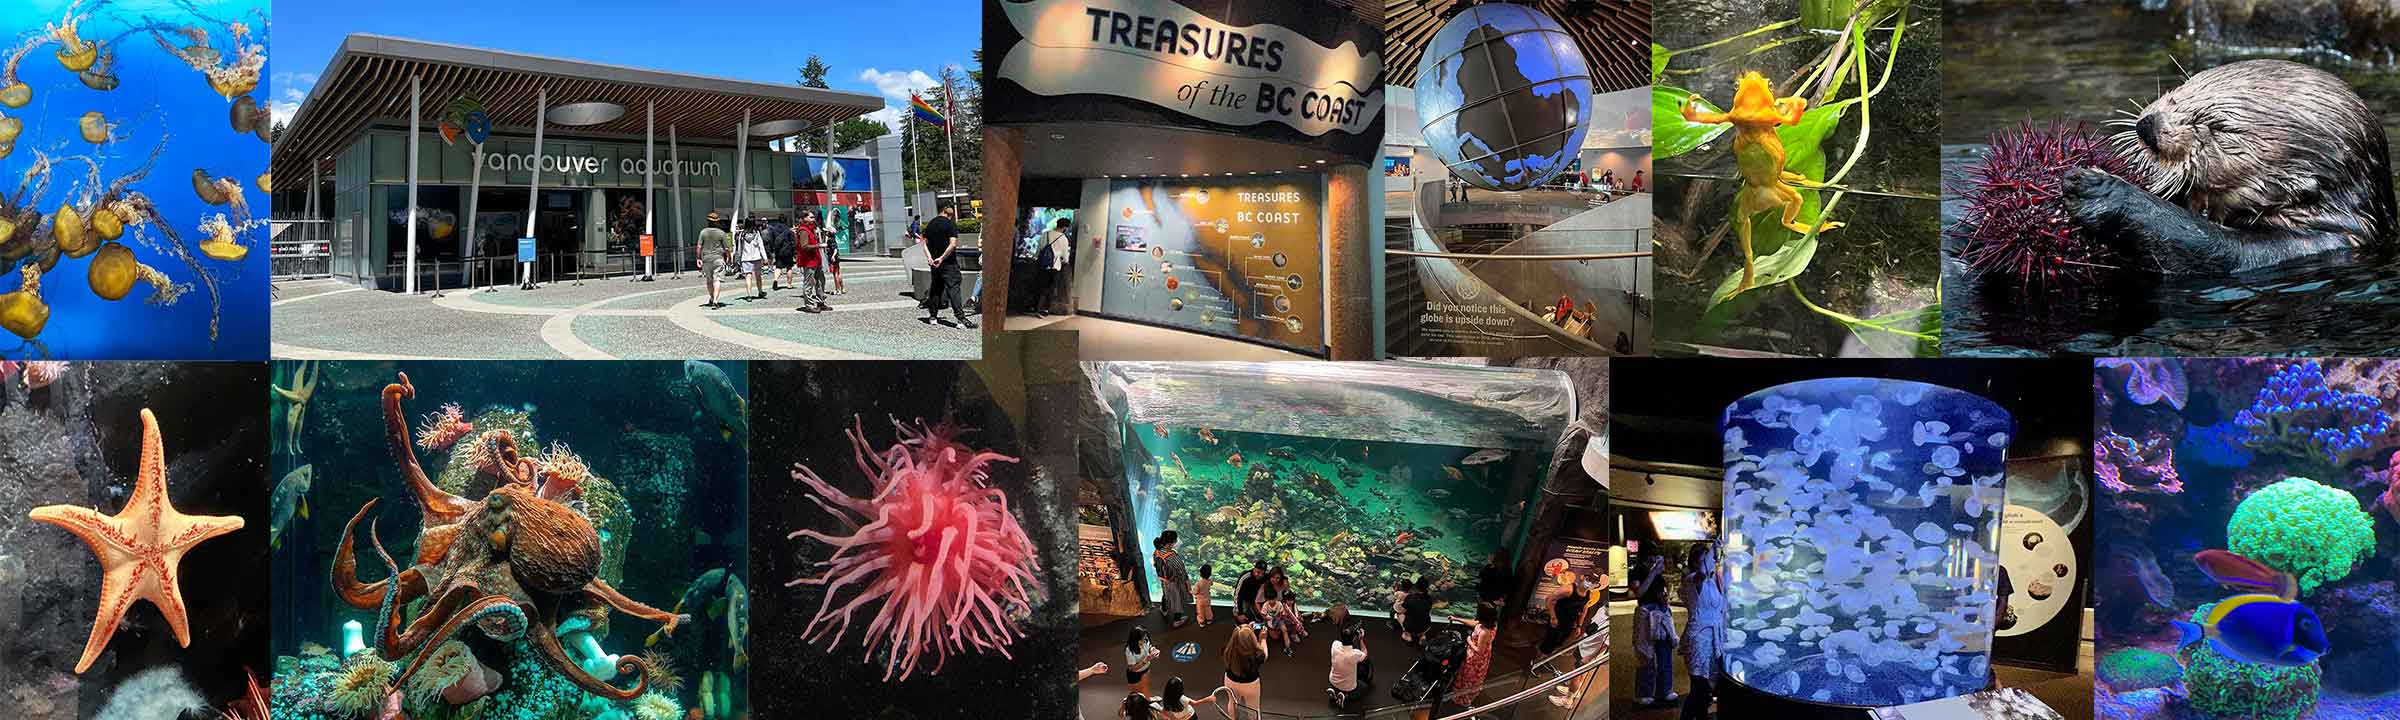 Vancouver Aquarium Banner Image